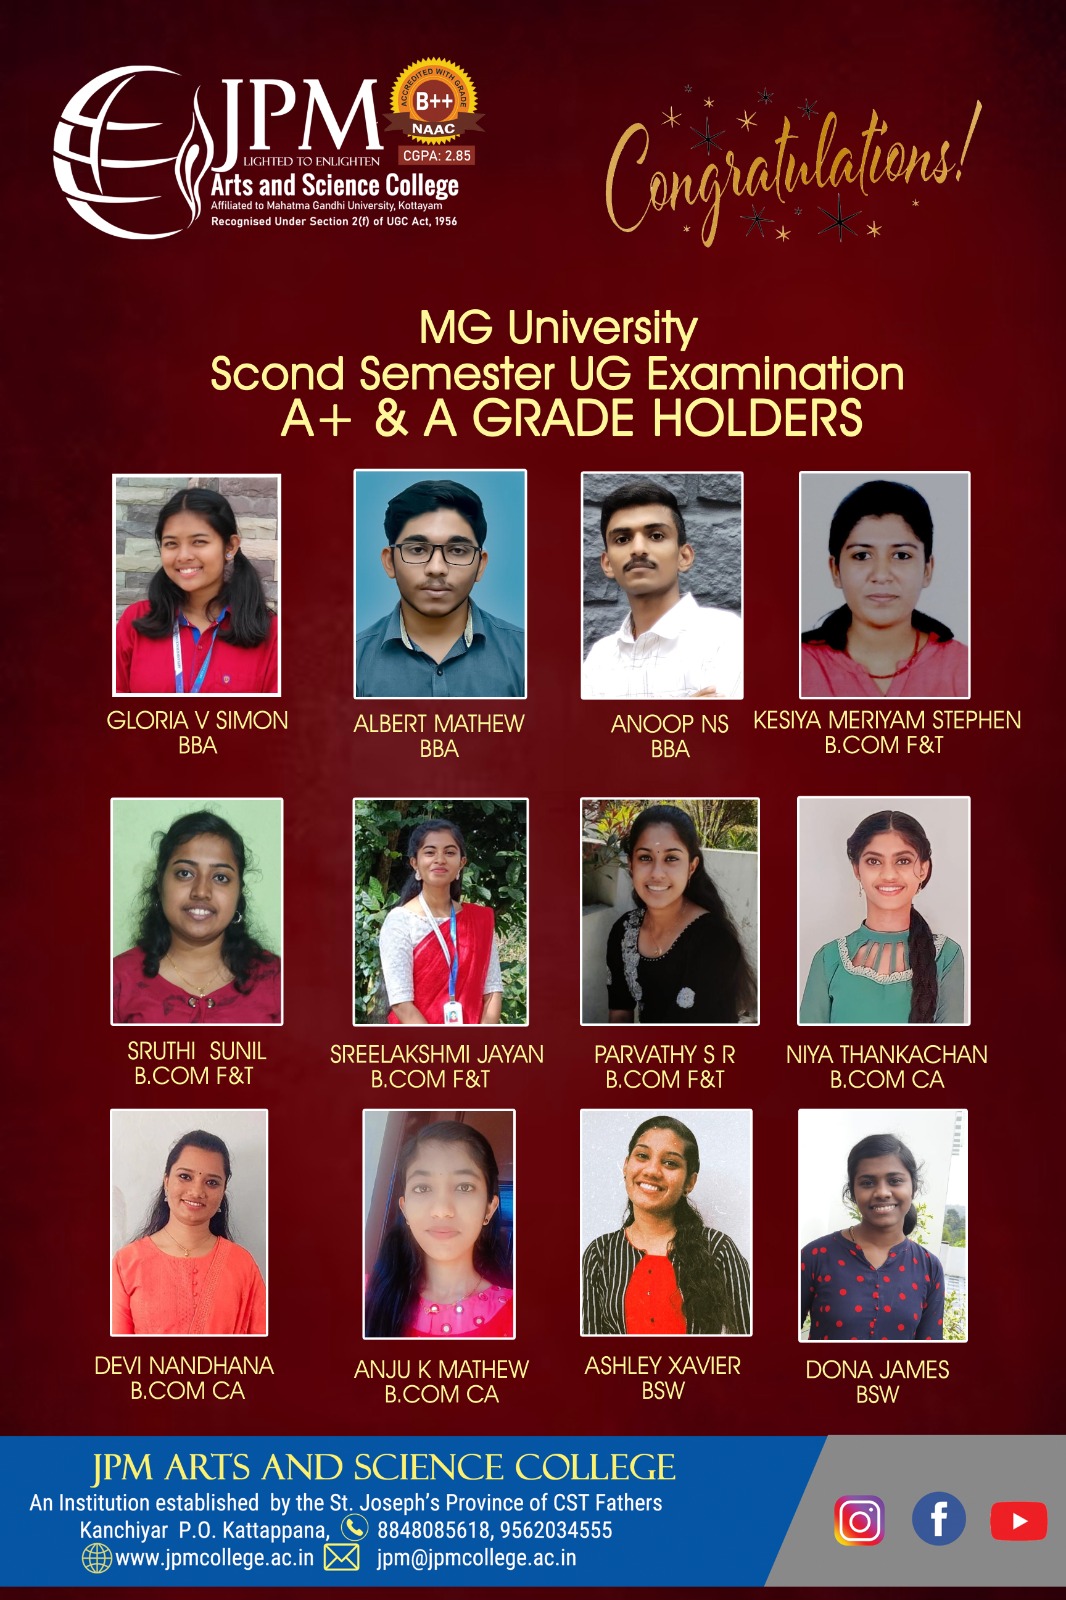 Congratulations dear students